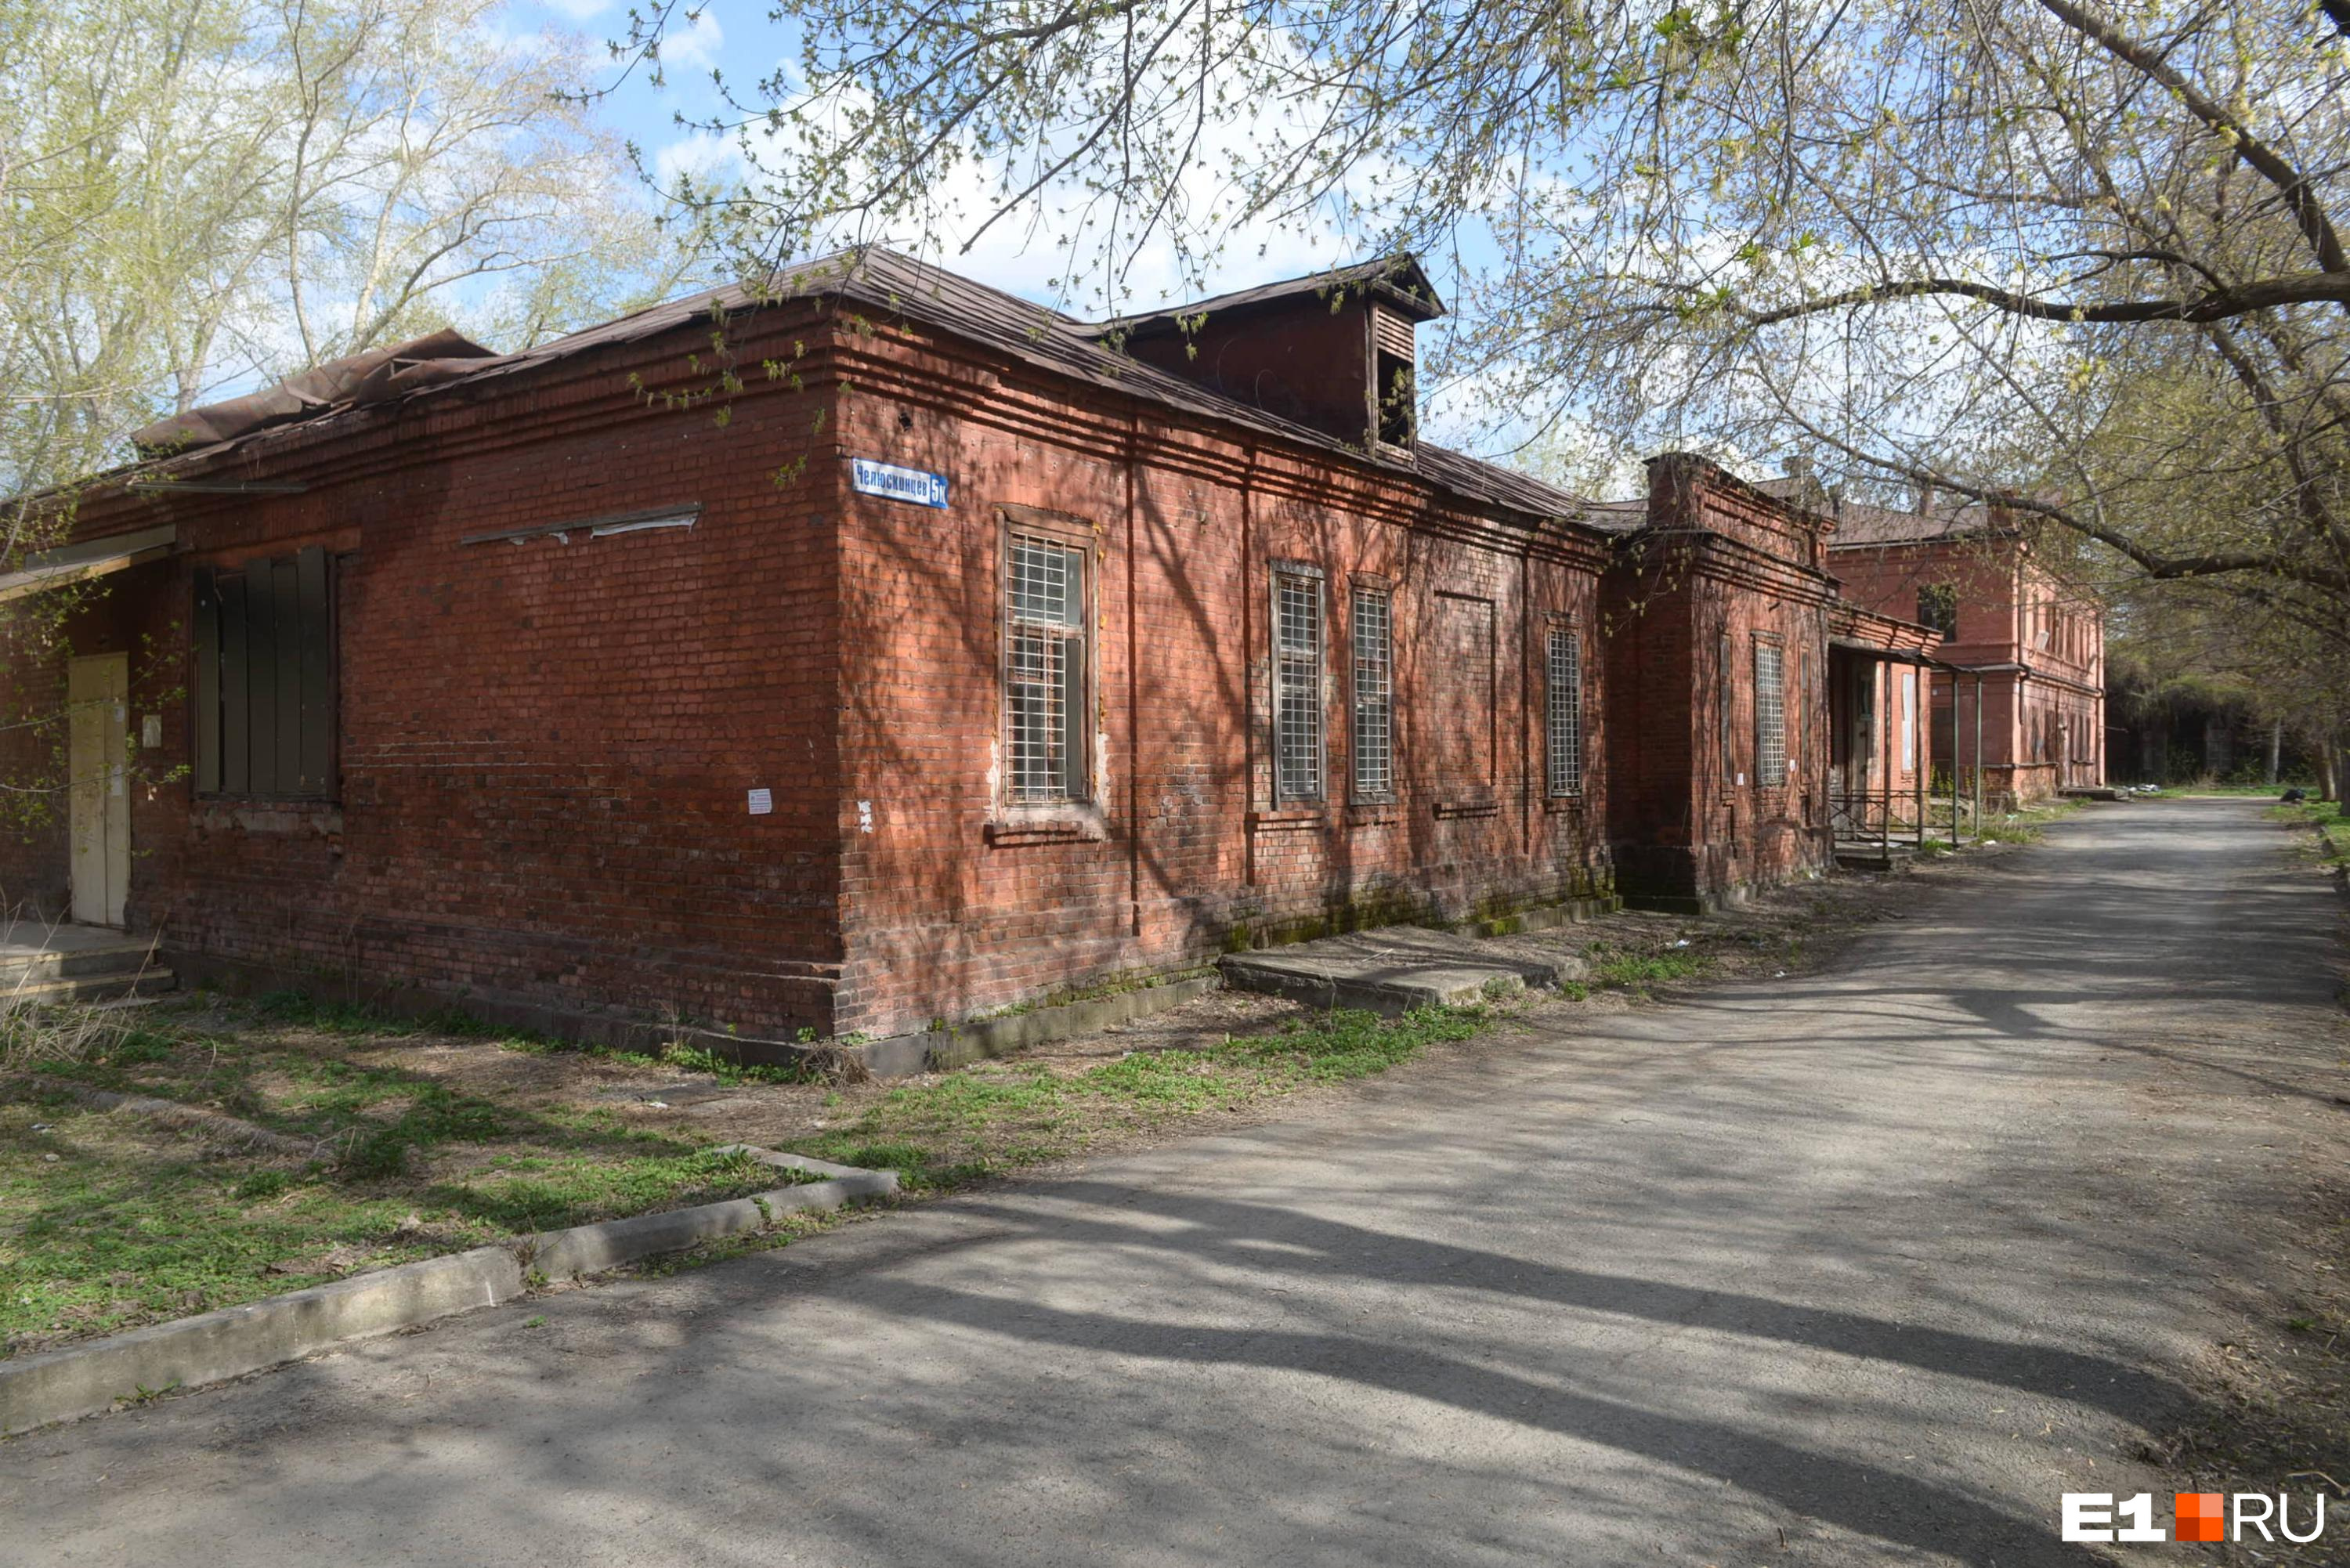 Мэрия Екатеринбурга решила продать здание первой больницы города. Этот квартал уже отдан под застройку